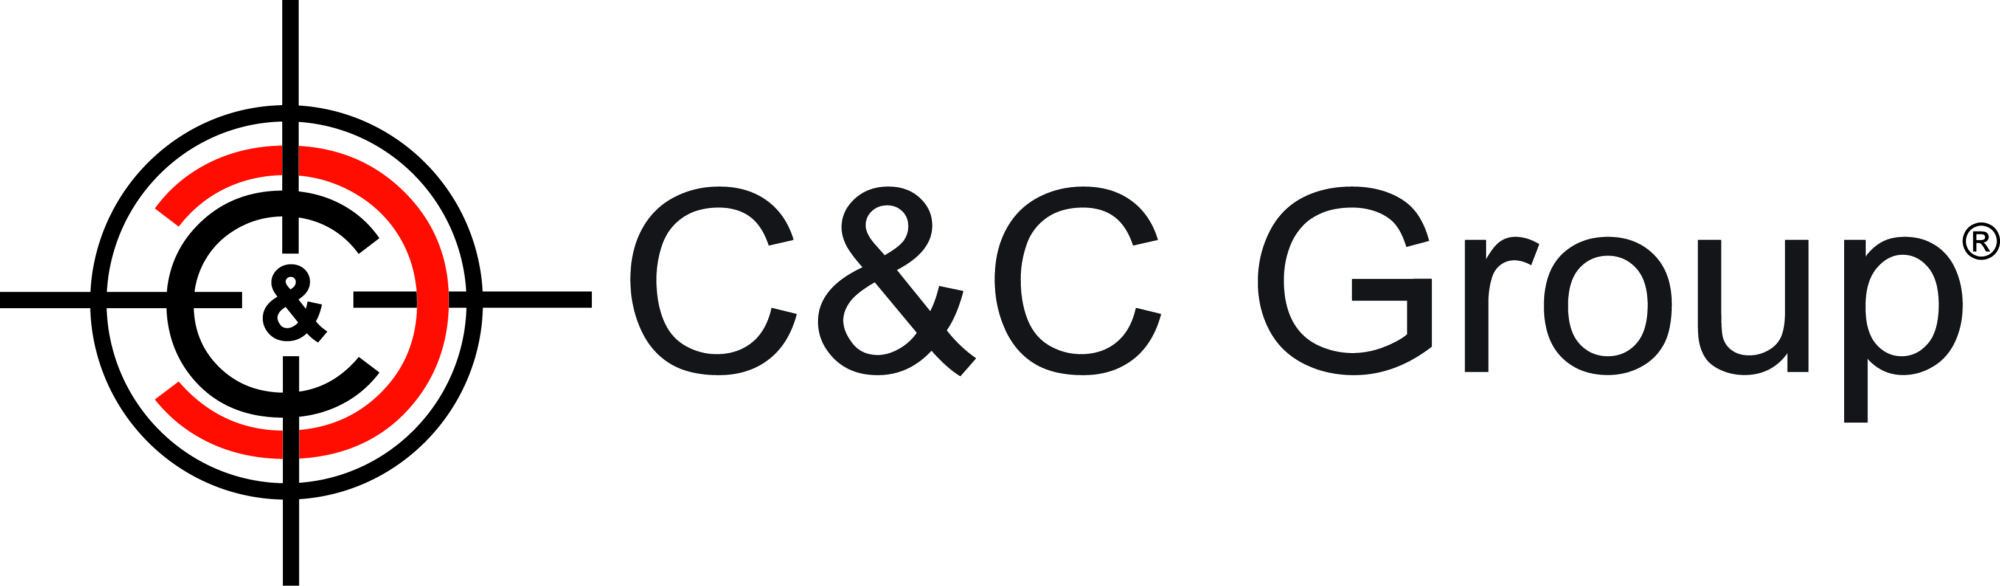 CCG Logo scaled 55c49f0b